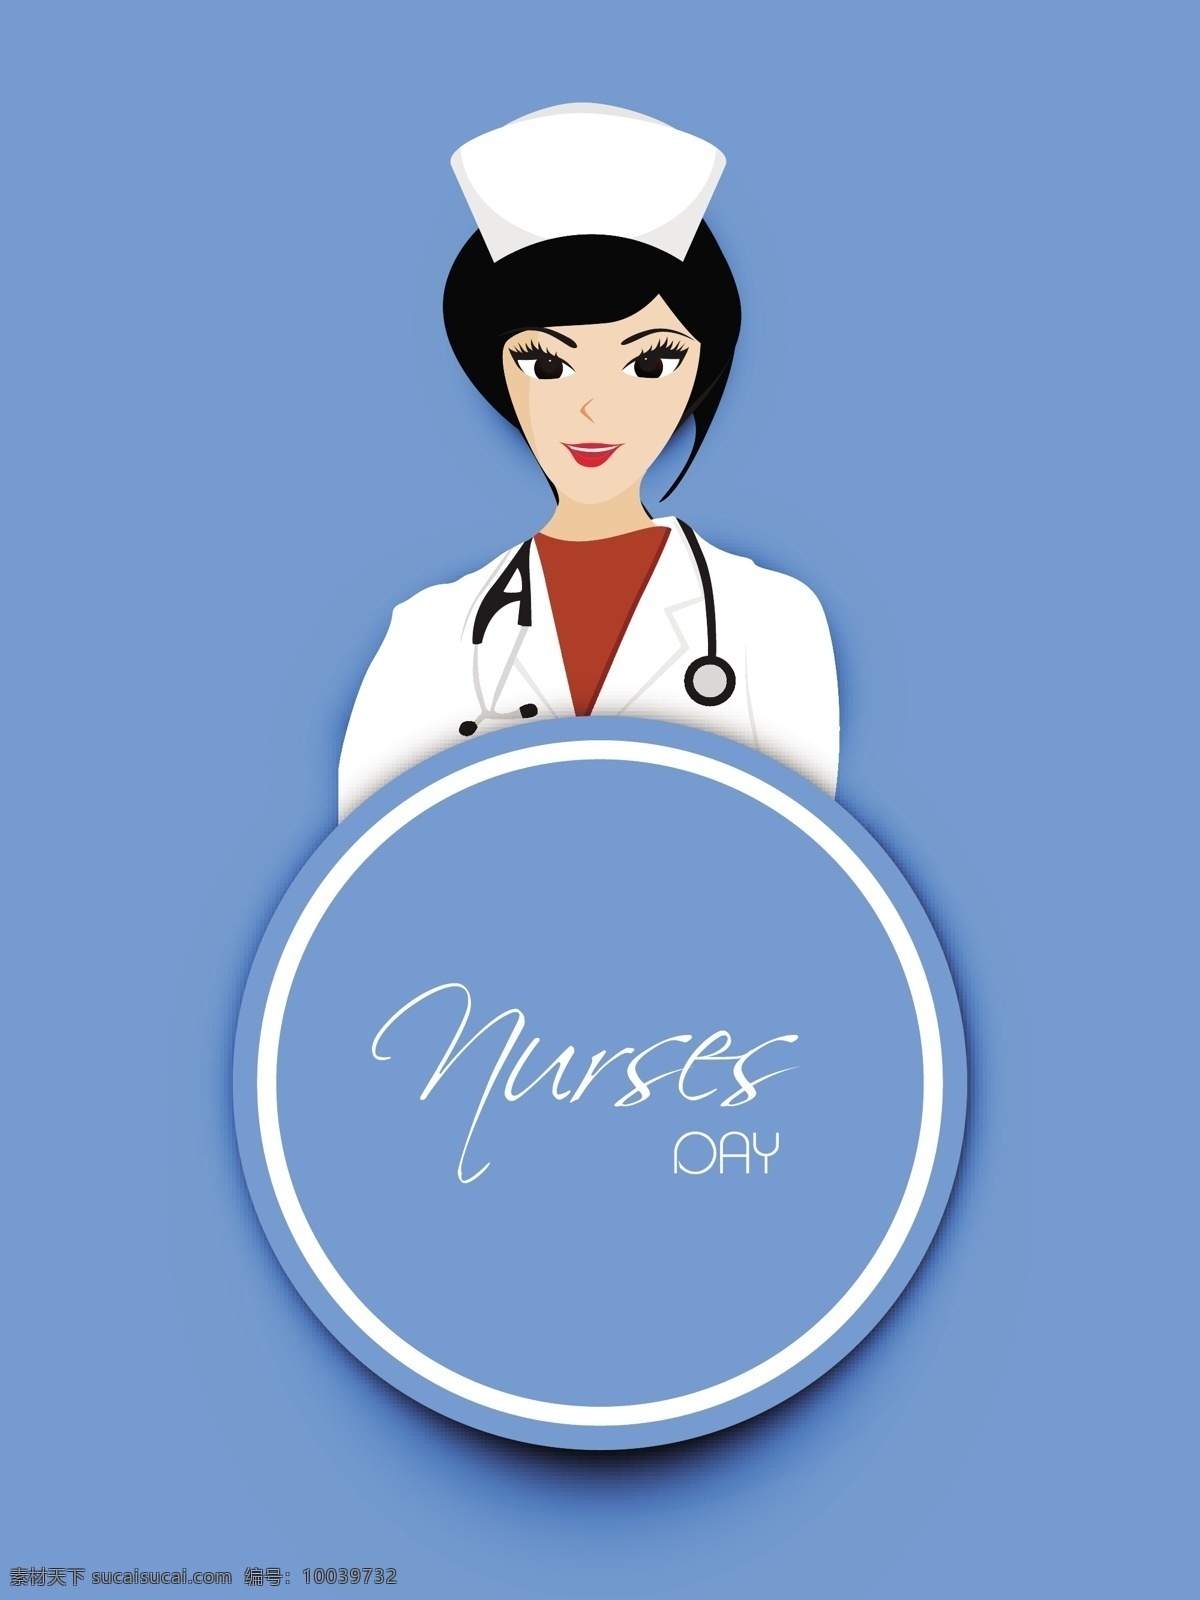 国际护士节 概念 一个 护士 插图 矢量图 矢量人物